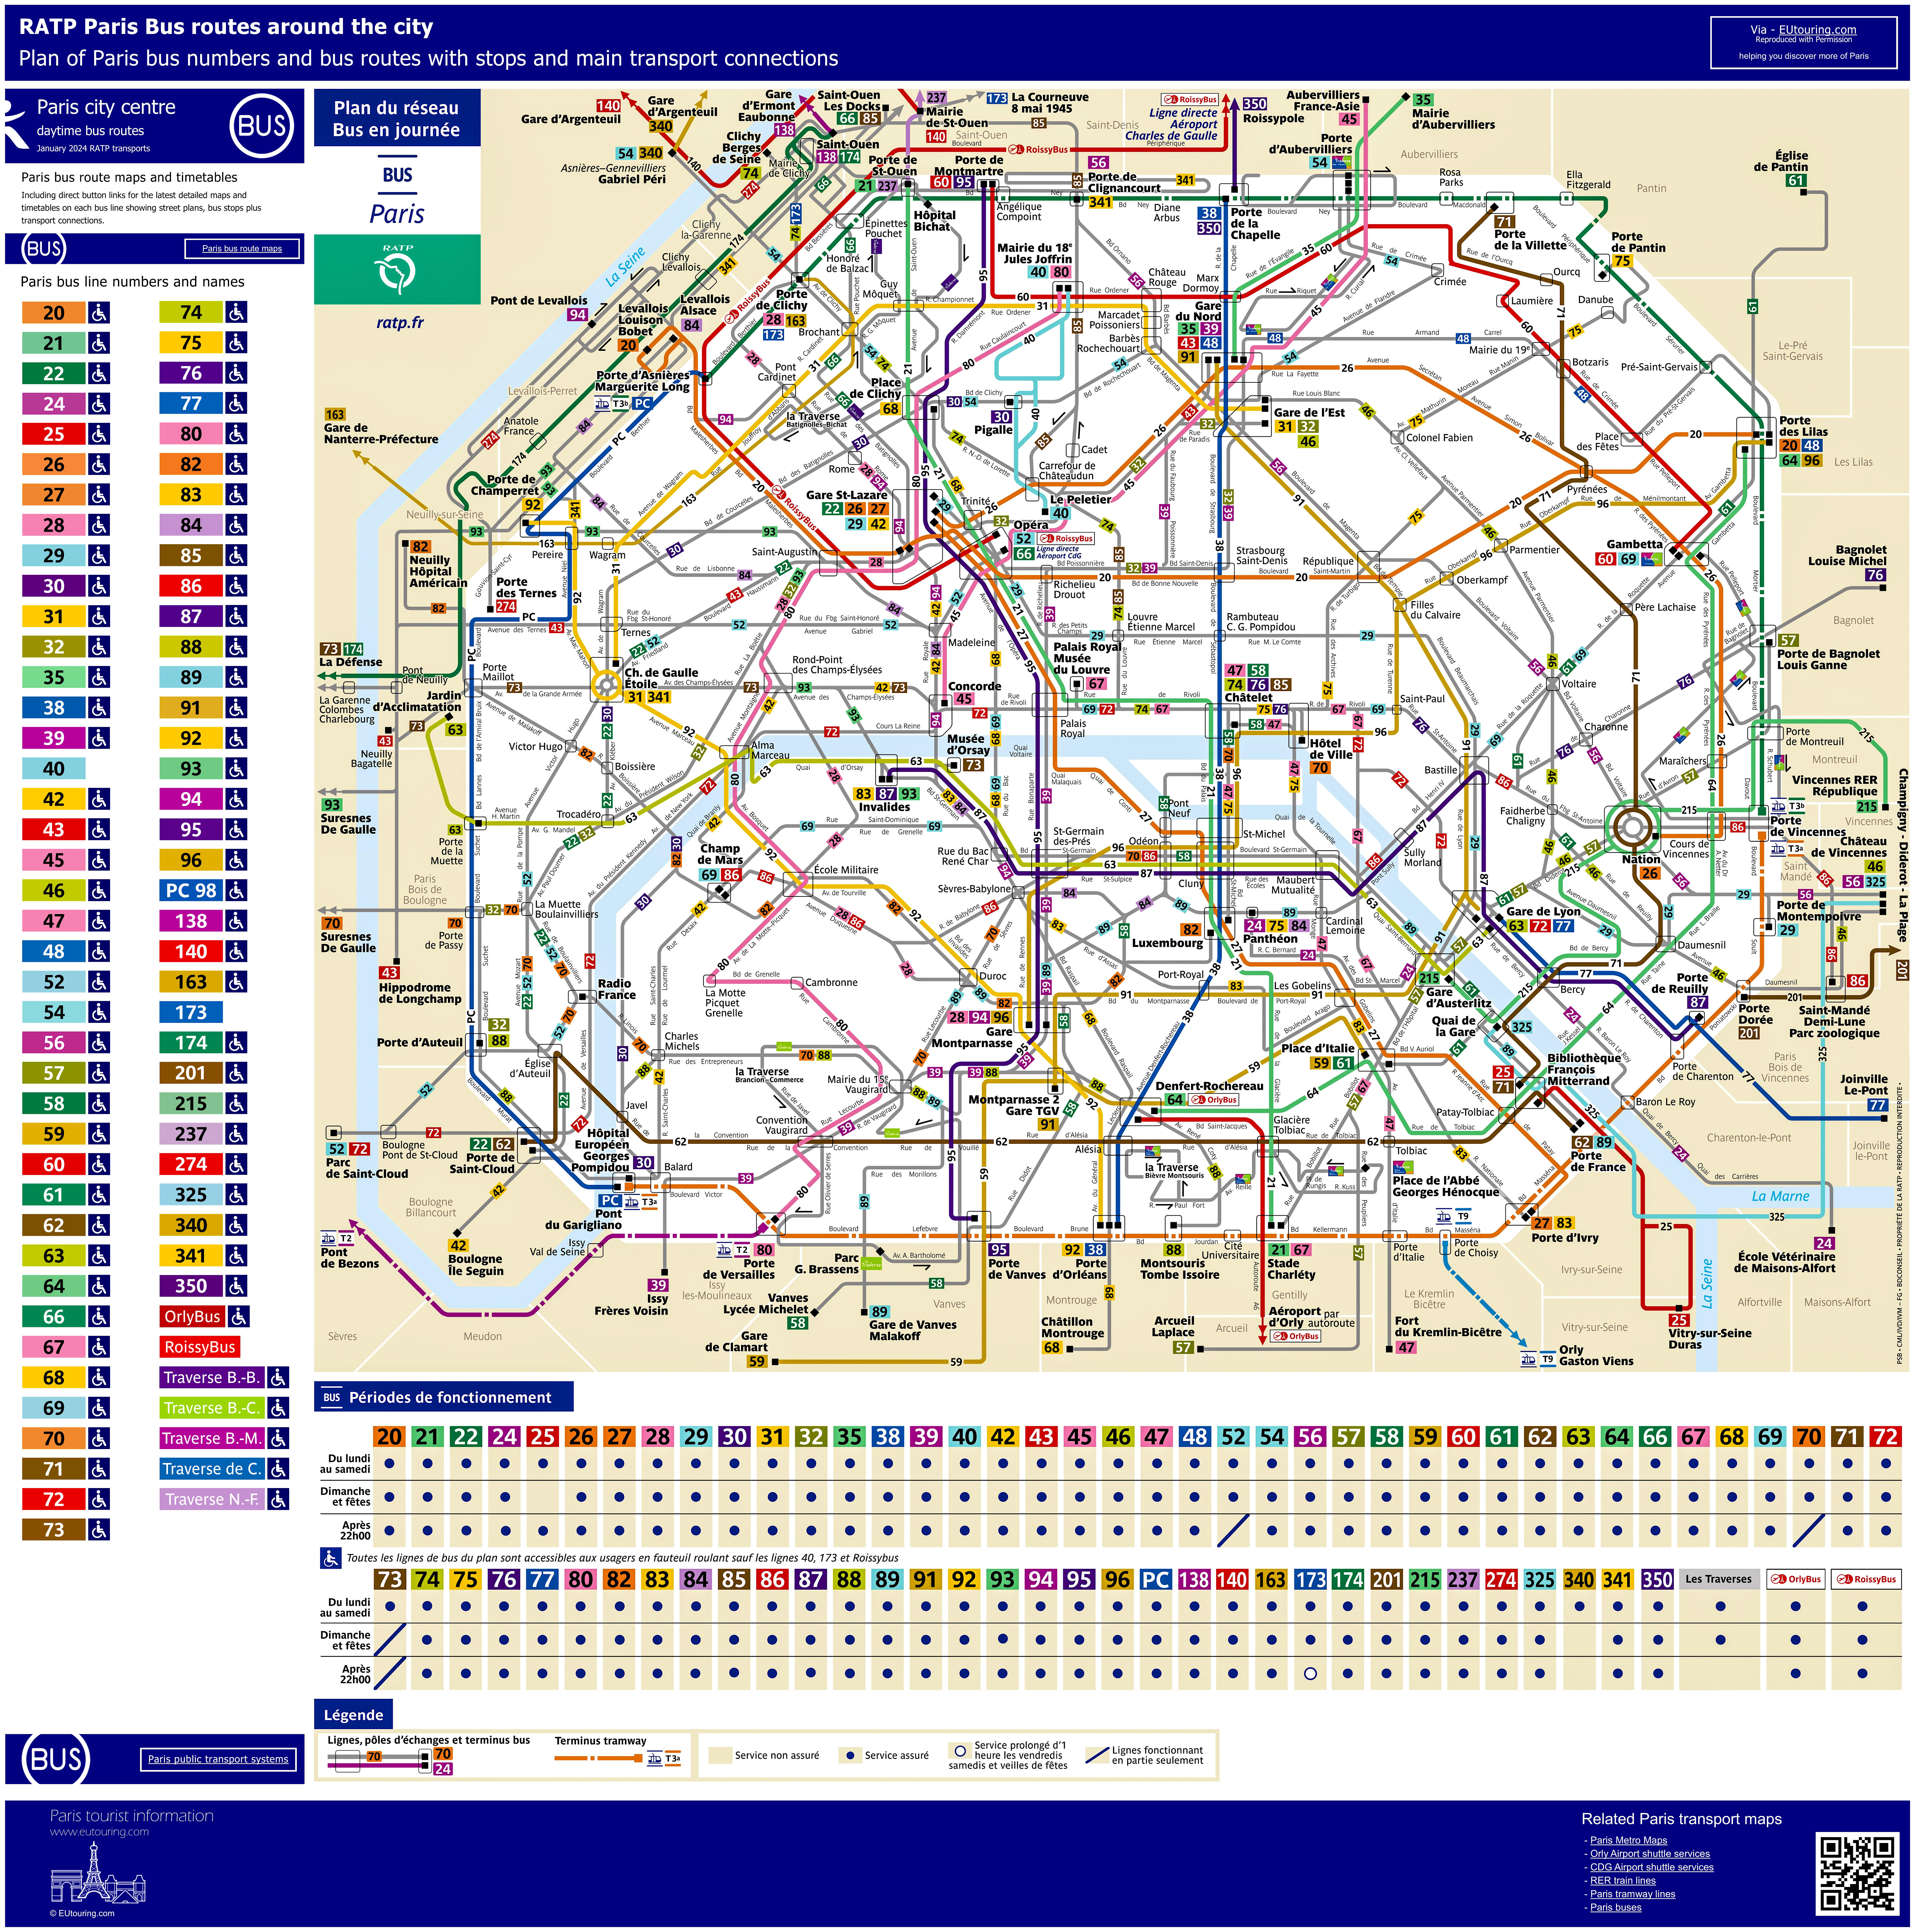 Paris bus map formats available.